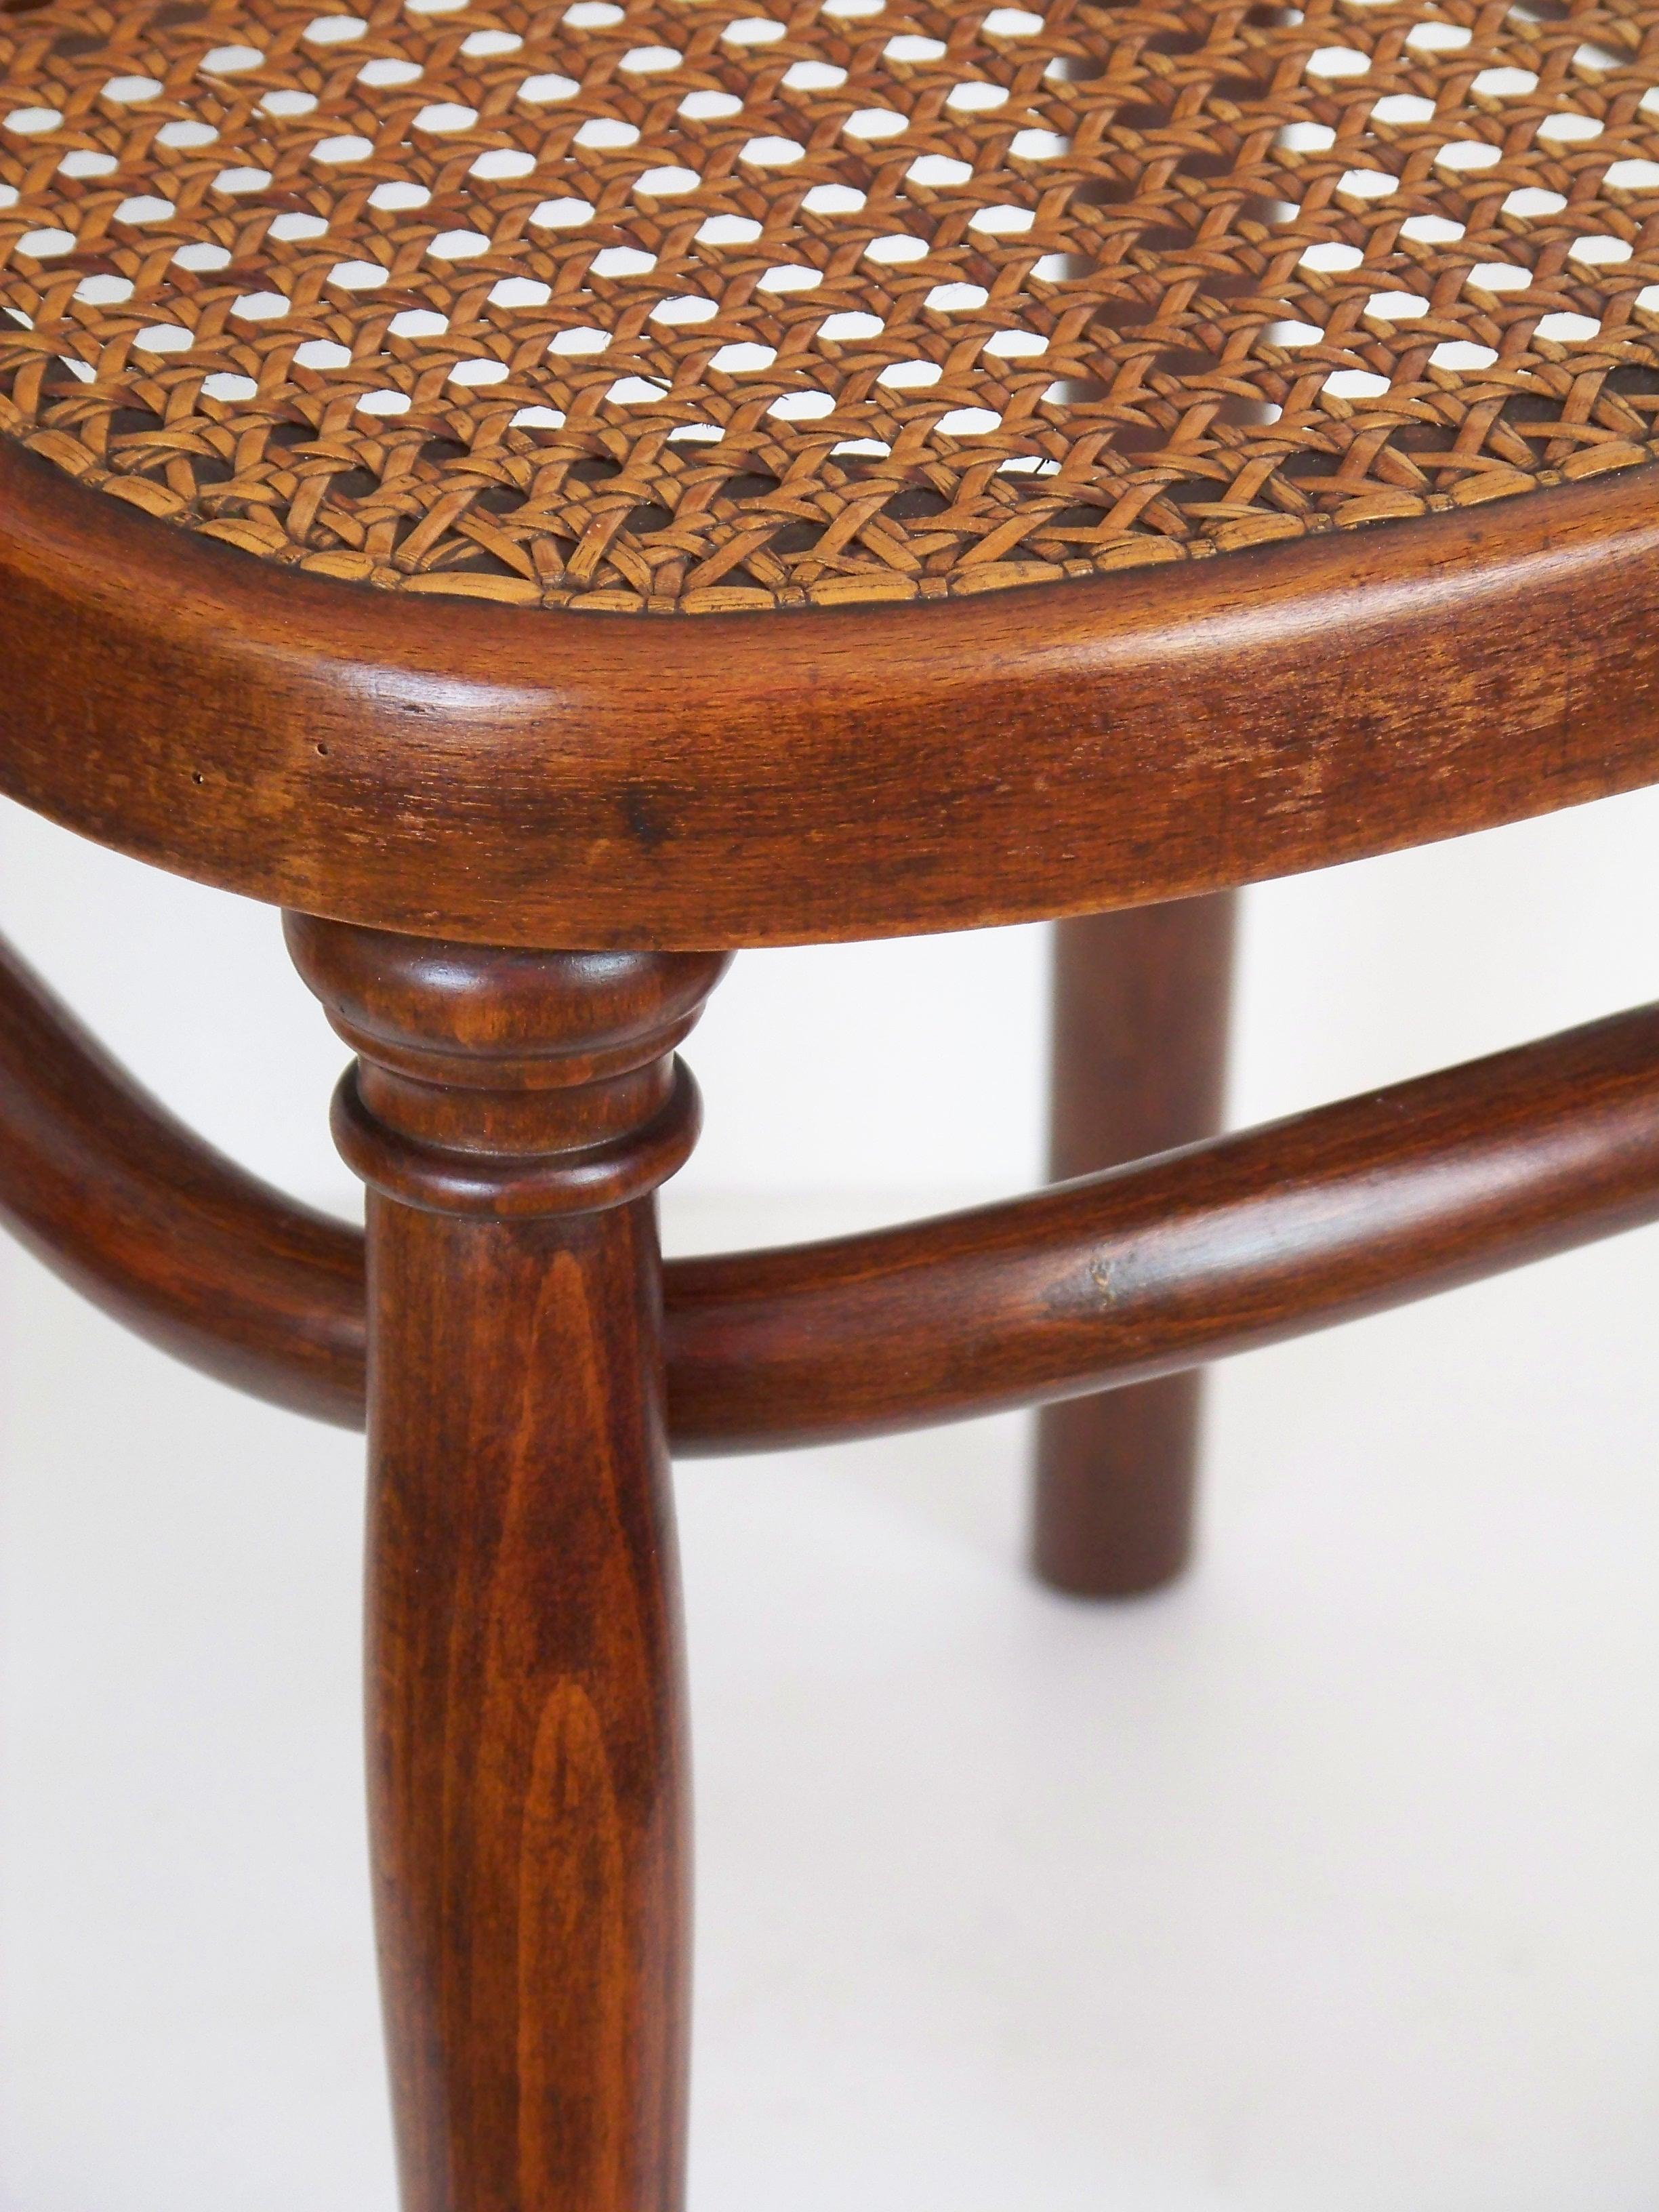 Art Nouveau Chair Thonet Nr. 183, since 1895